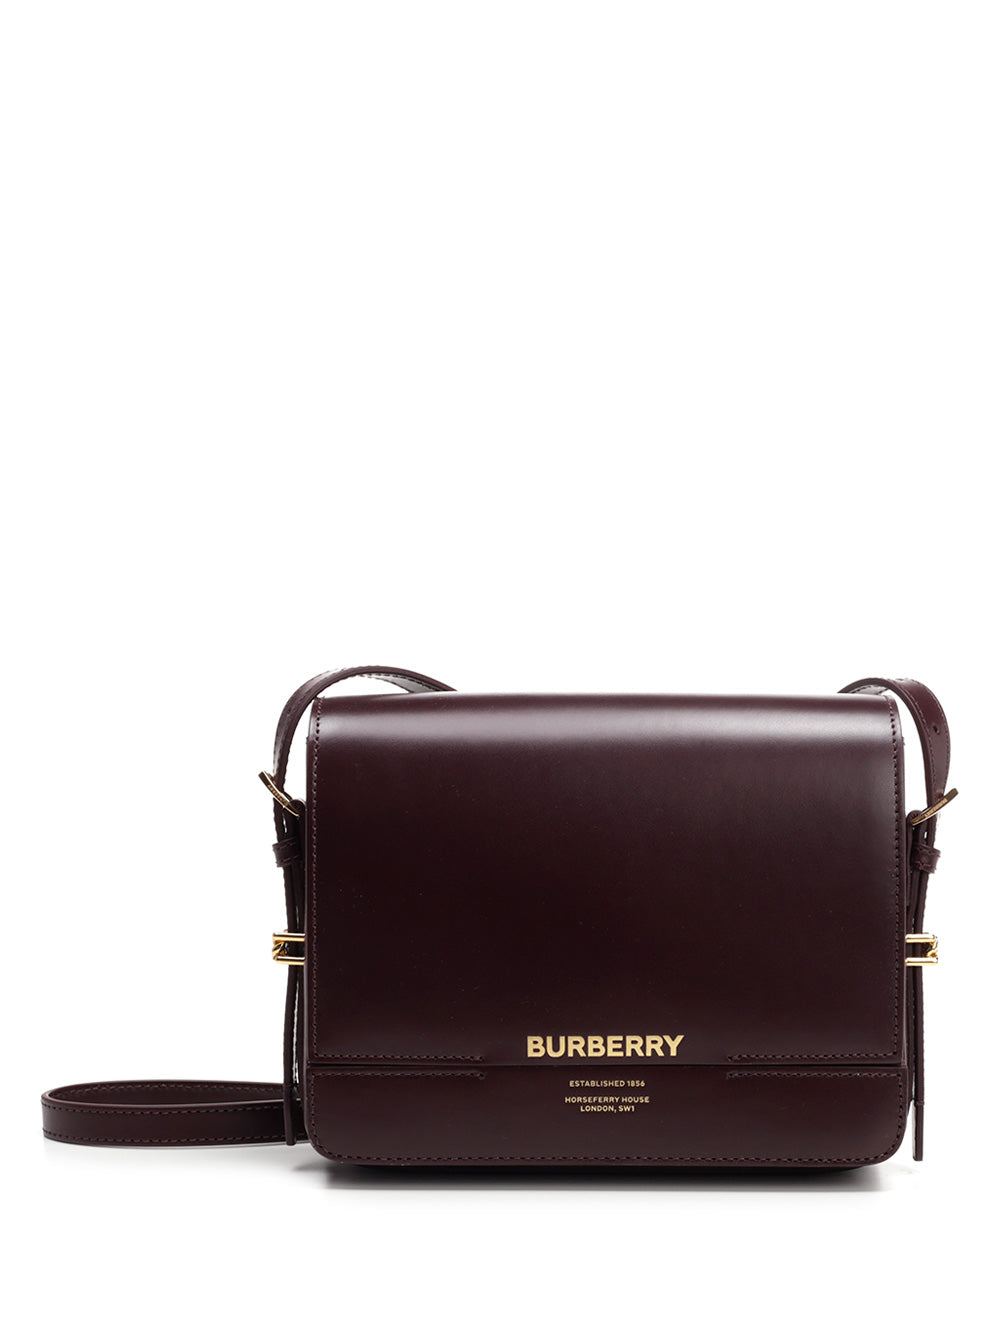 BURBERRY BURBERRY GRACE SMALL SHOULDER BAG